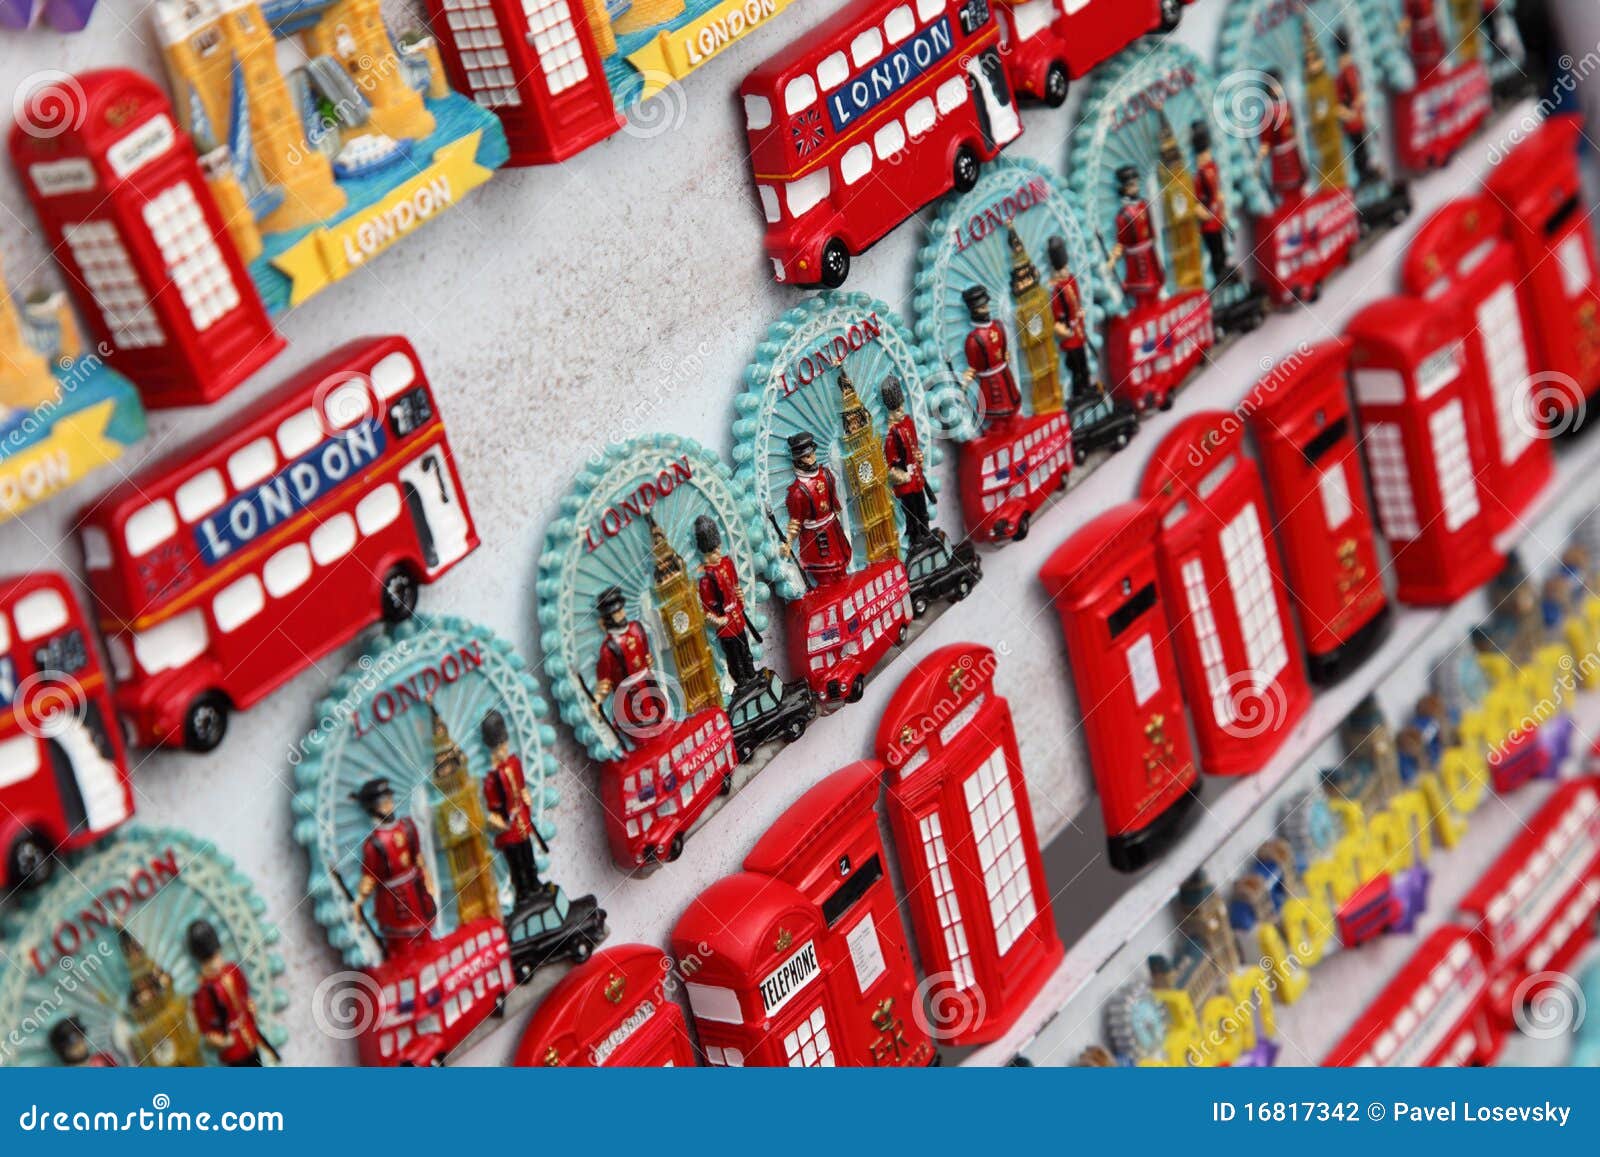 LONDON - 7. JUNI: Wenige Reihen der Magnetandenken von London: Big Ben, roter Bus, rufen am 7. Juni 2010 in London an. Jährlich geben Besucher in London 10 Milliarde Pfund Sterling aus